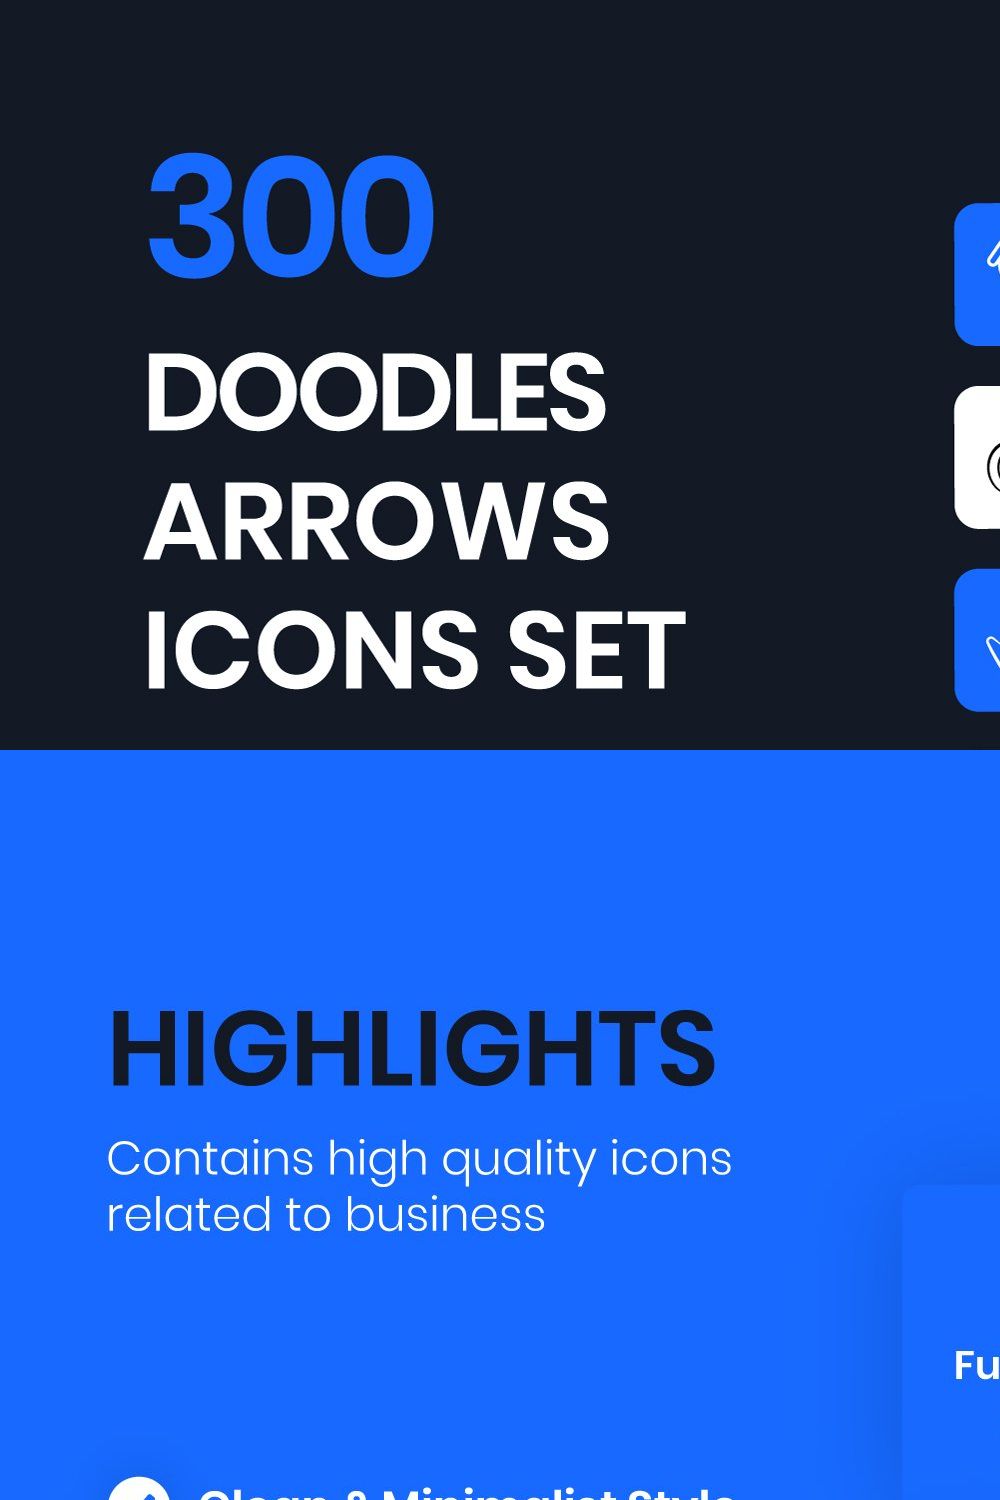 300 Doodle Arrows Icons Set pinterest preview image.